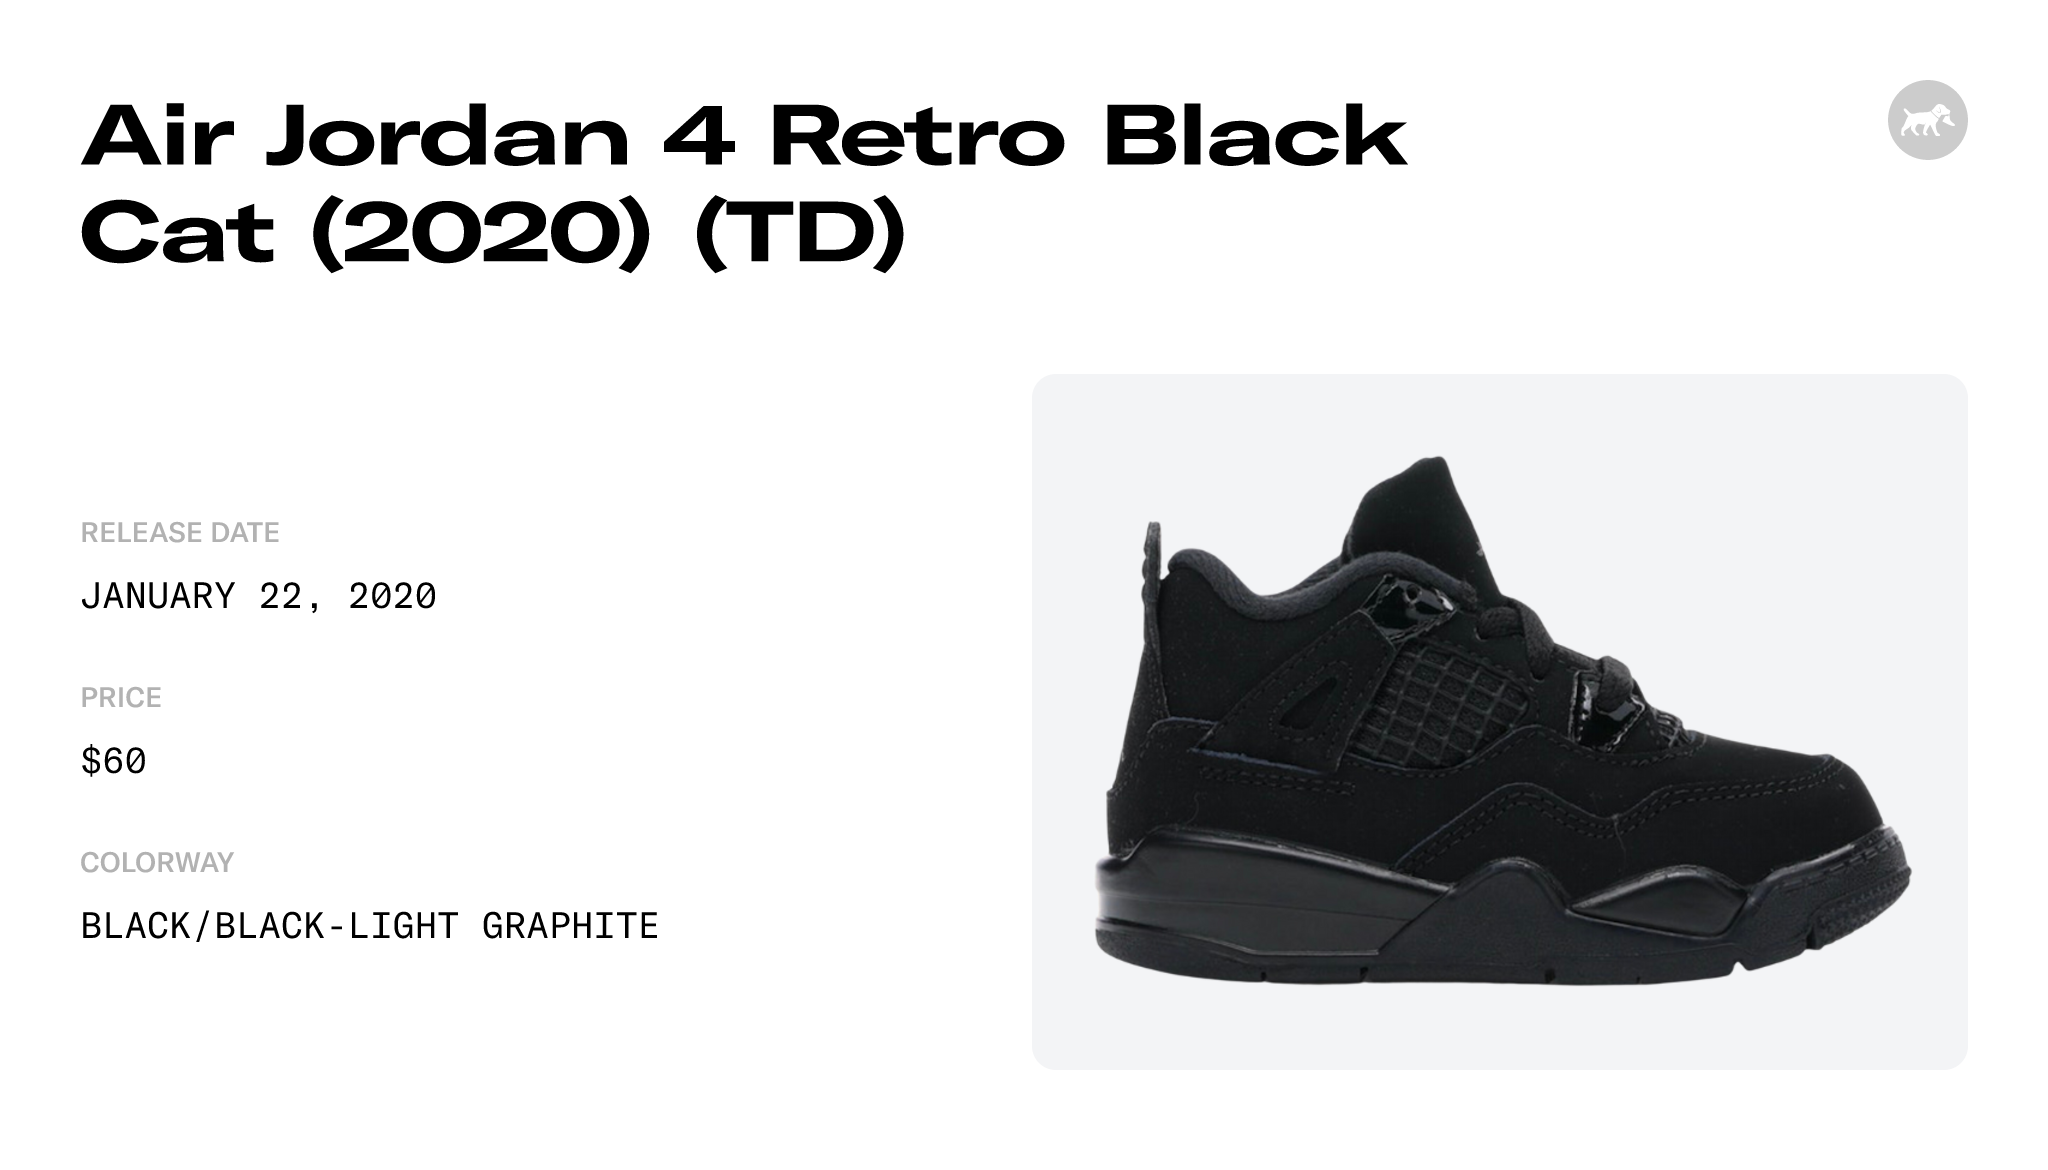 Air Jordan 4 Retro Black Cat 2020 - Stadium Goods